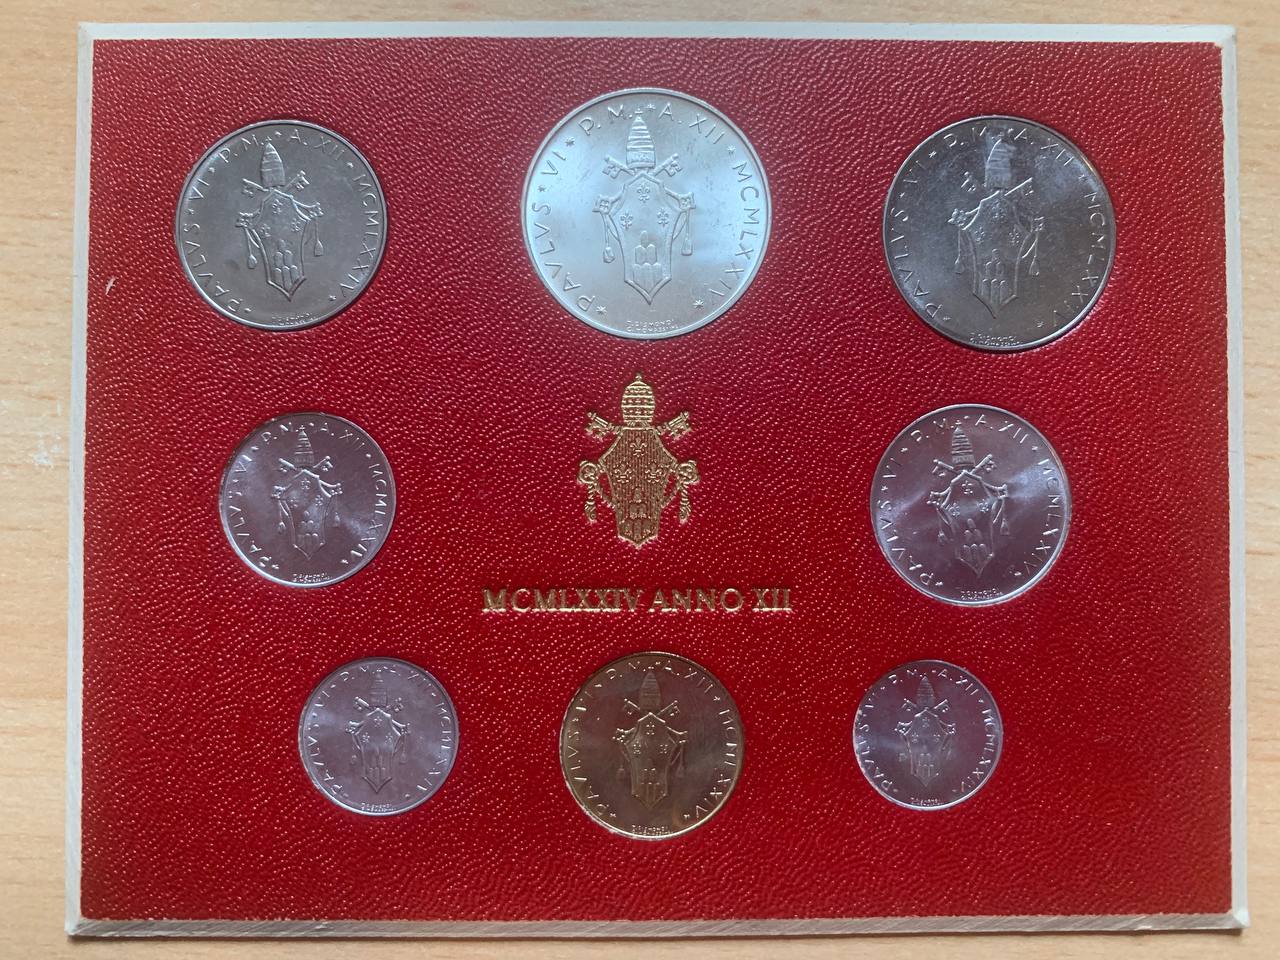  Jahresset von Vatikan 1974 BU (8 Münzen)   